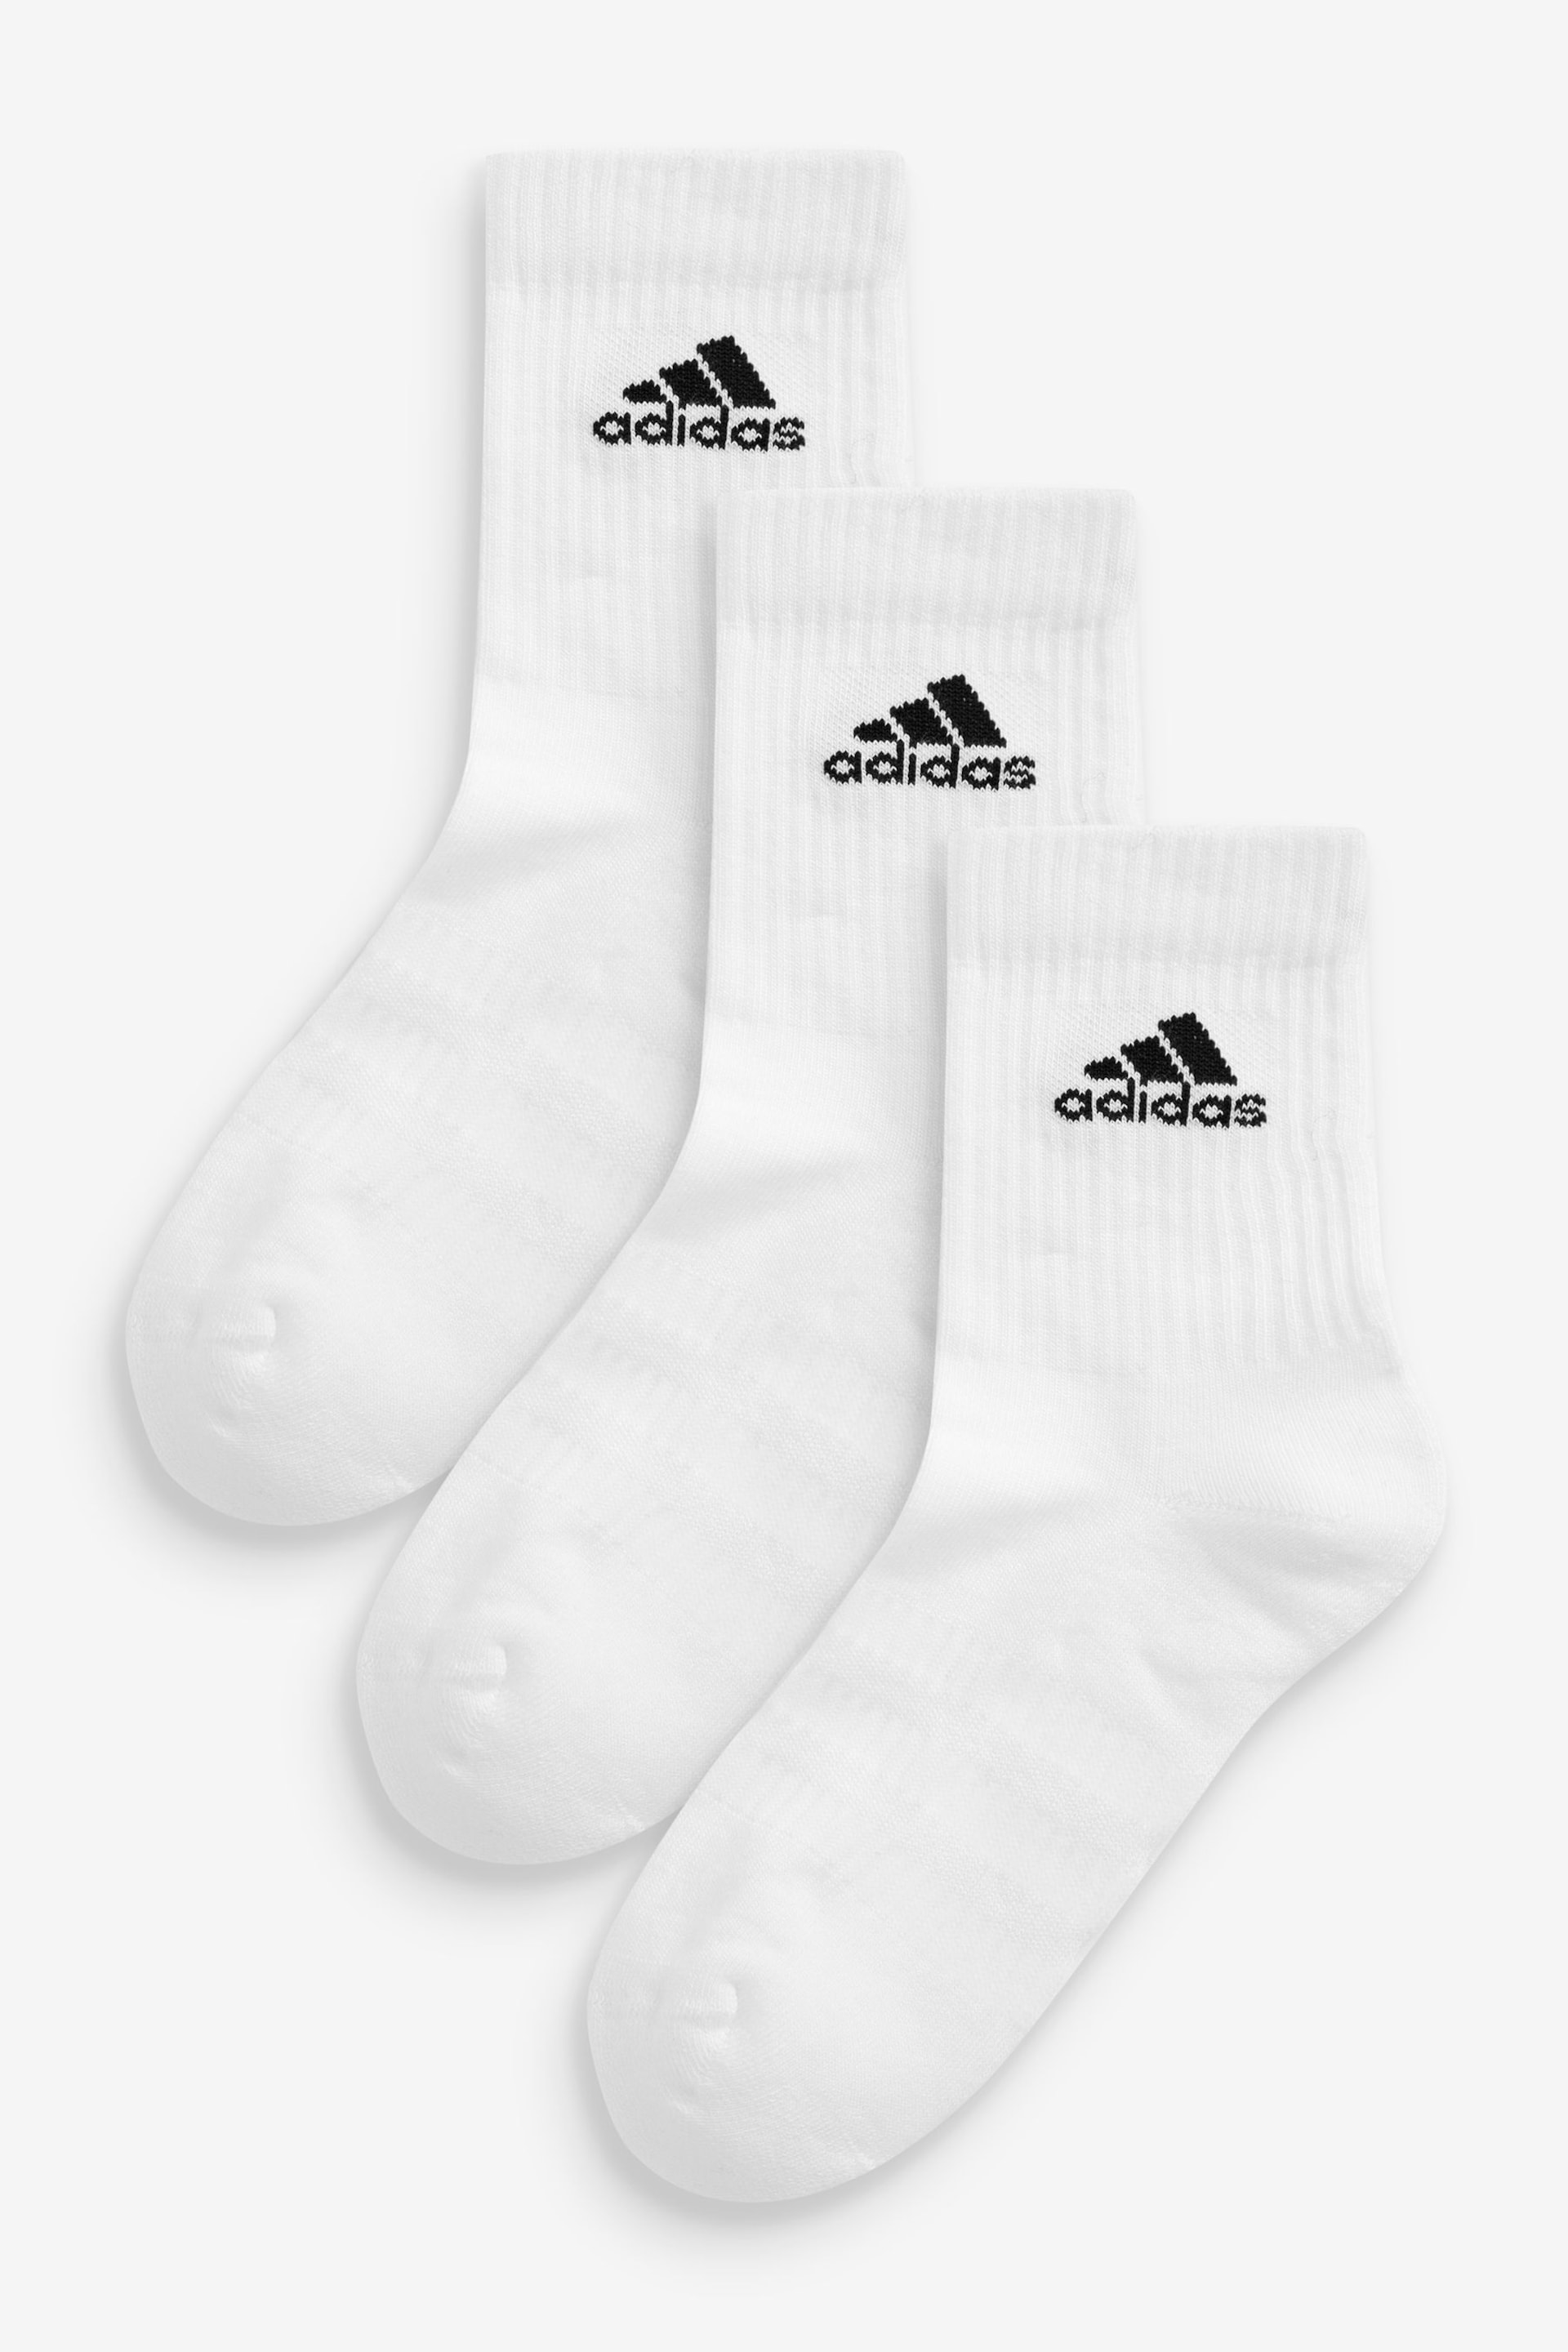 adidas White Adult Cushioned Crew Socks - Image 1 of 3